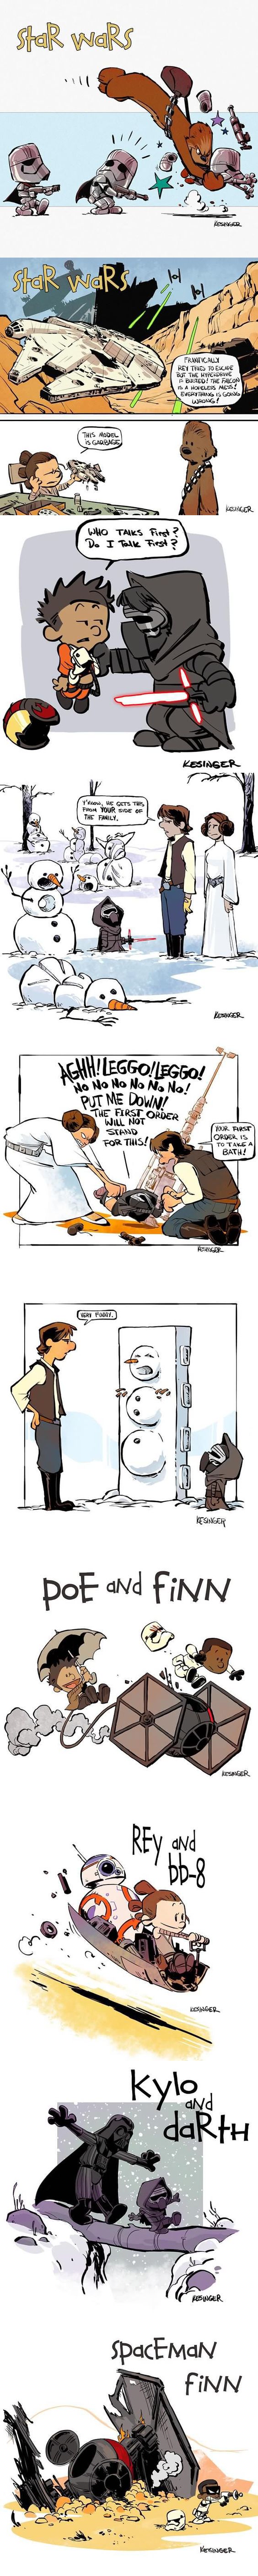 Calvin & Hobbes style Star Wars: The Force Awakens - 9GAG